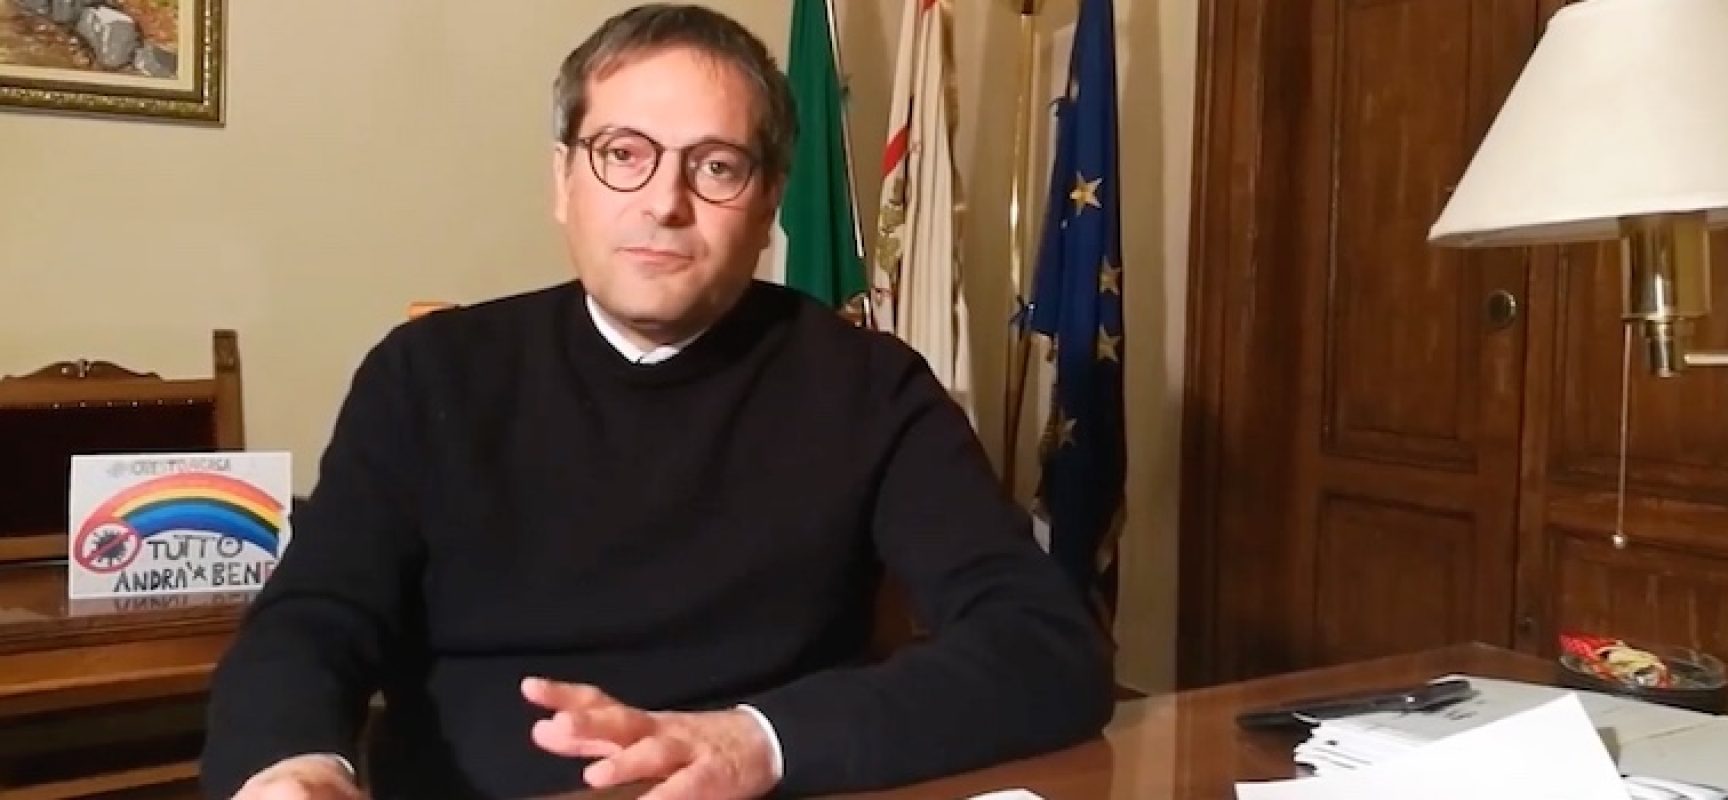 Spari sulla litoranea, il sindaco Angarano: “Gratitudine all’Arma dei Carabinieri”